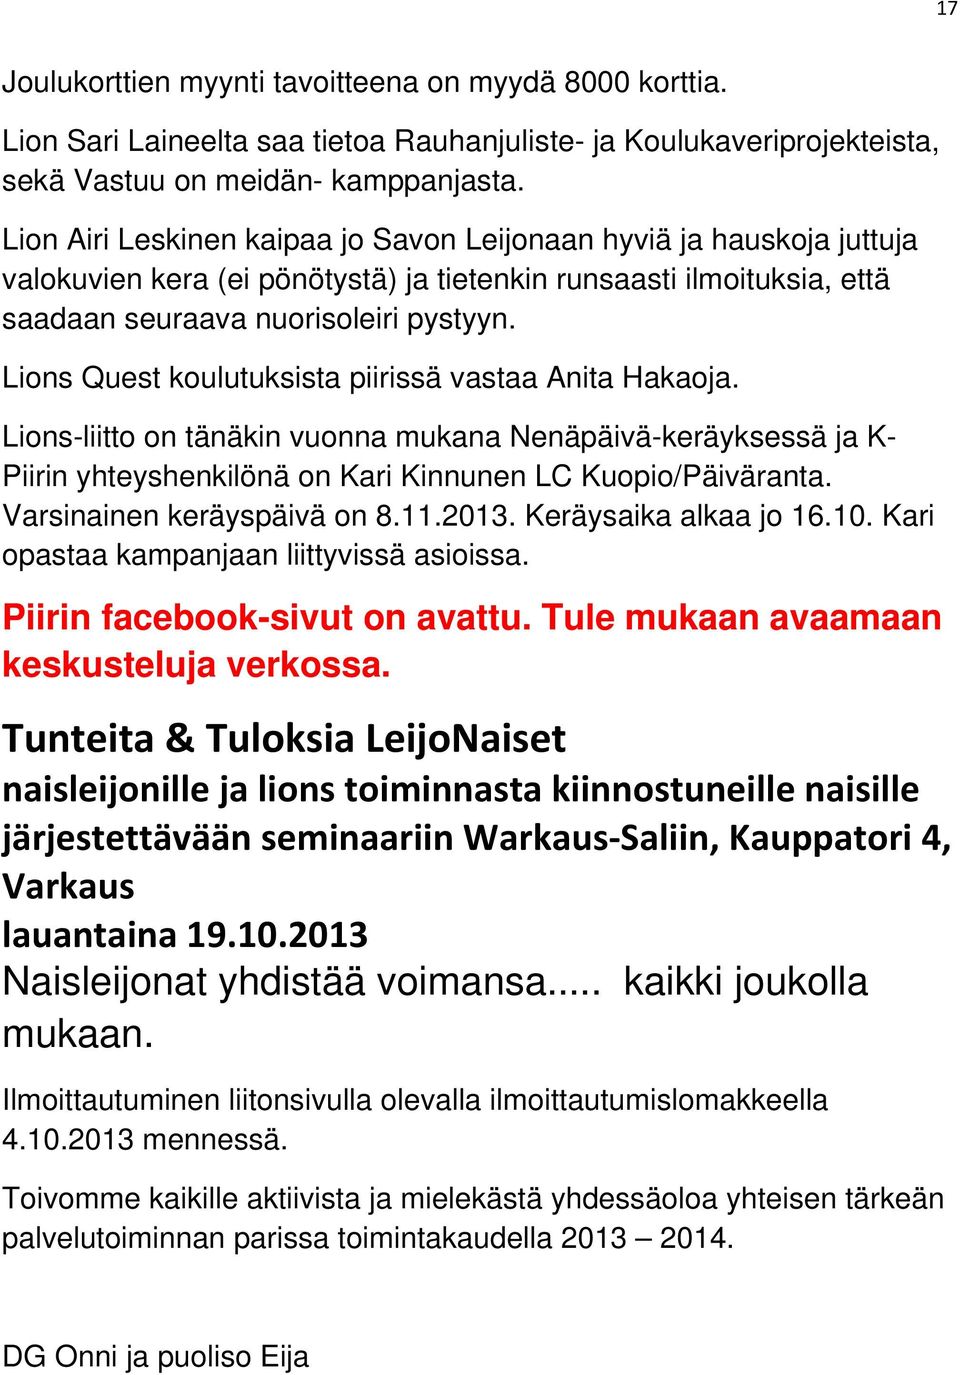 Lions Quest koulutuksista piirissä vastaa Anita Hakaoja. Lions-liitto on tänäkin vuonna mukana Nenäpäivä-keräyksessä ja K- Piirin yhteyshenkilönä on Kari Kinnunen LC Kuopio/Päiväranta.